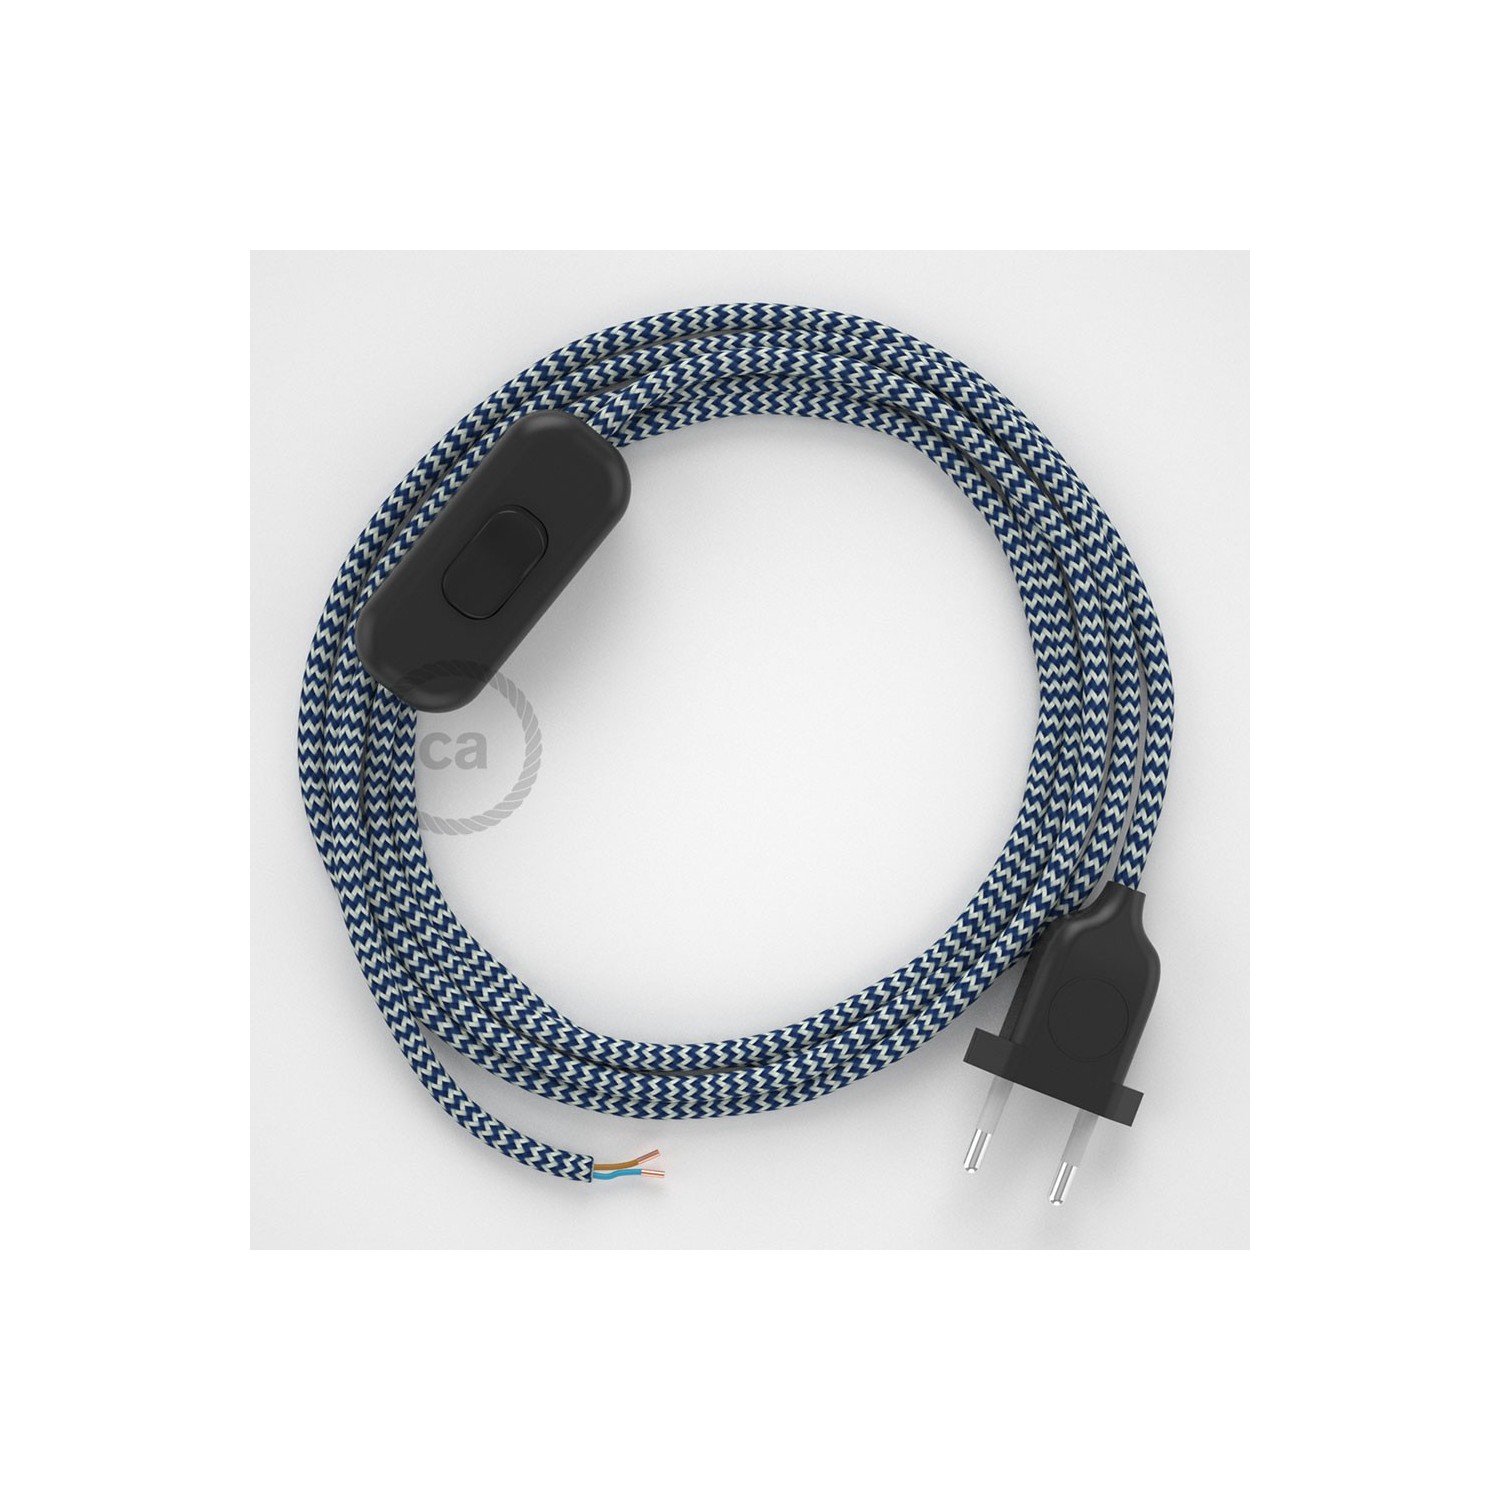 Cordon pour lampe, câble RZ12 Effet Soie ZigZag Blanc-Bleu 1,80 m. Choisissez la couleur de la fiche et de l'interrupteur!